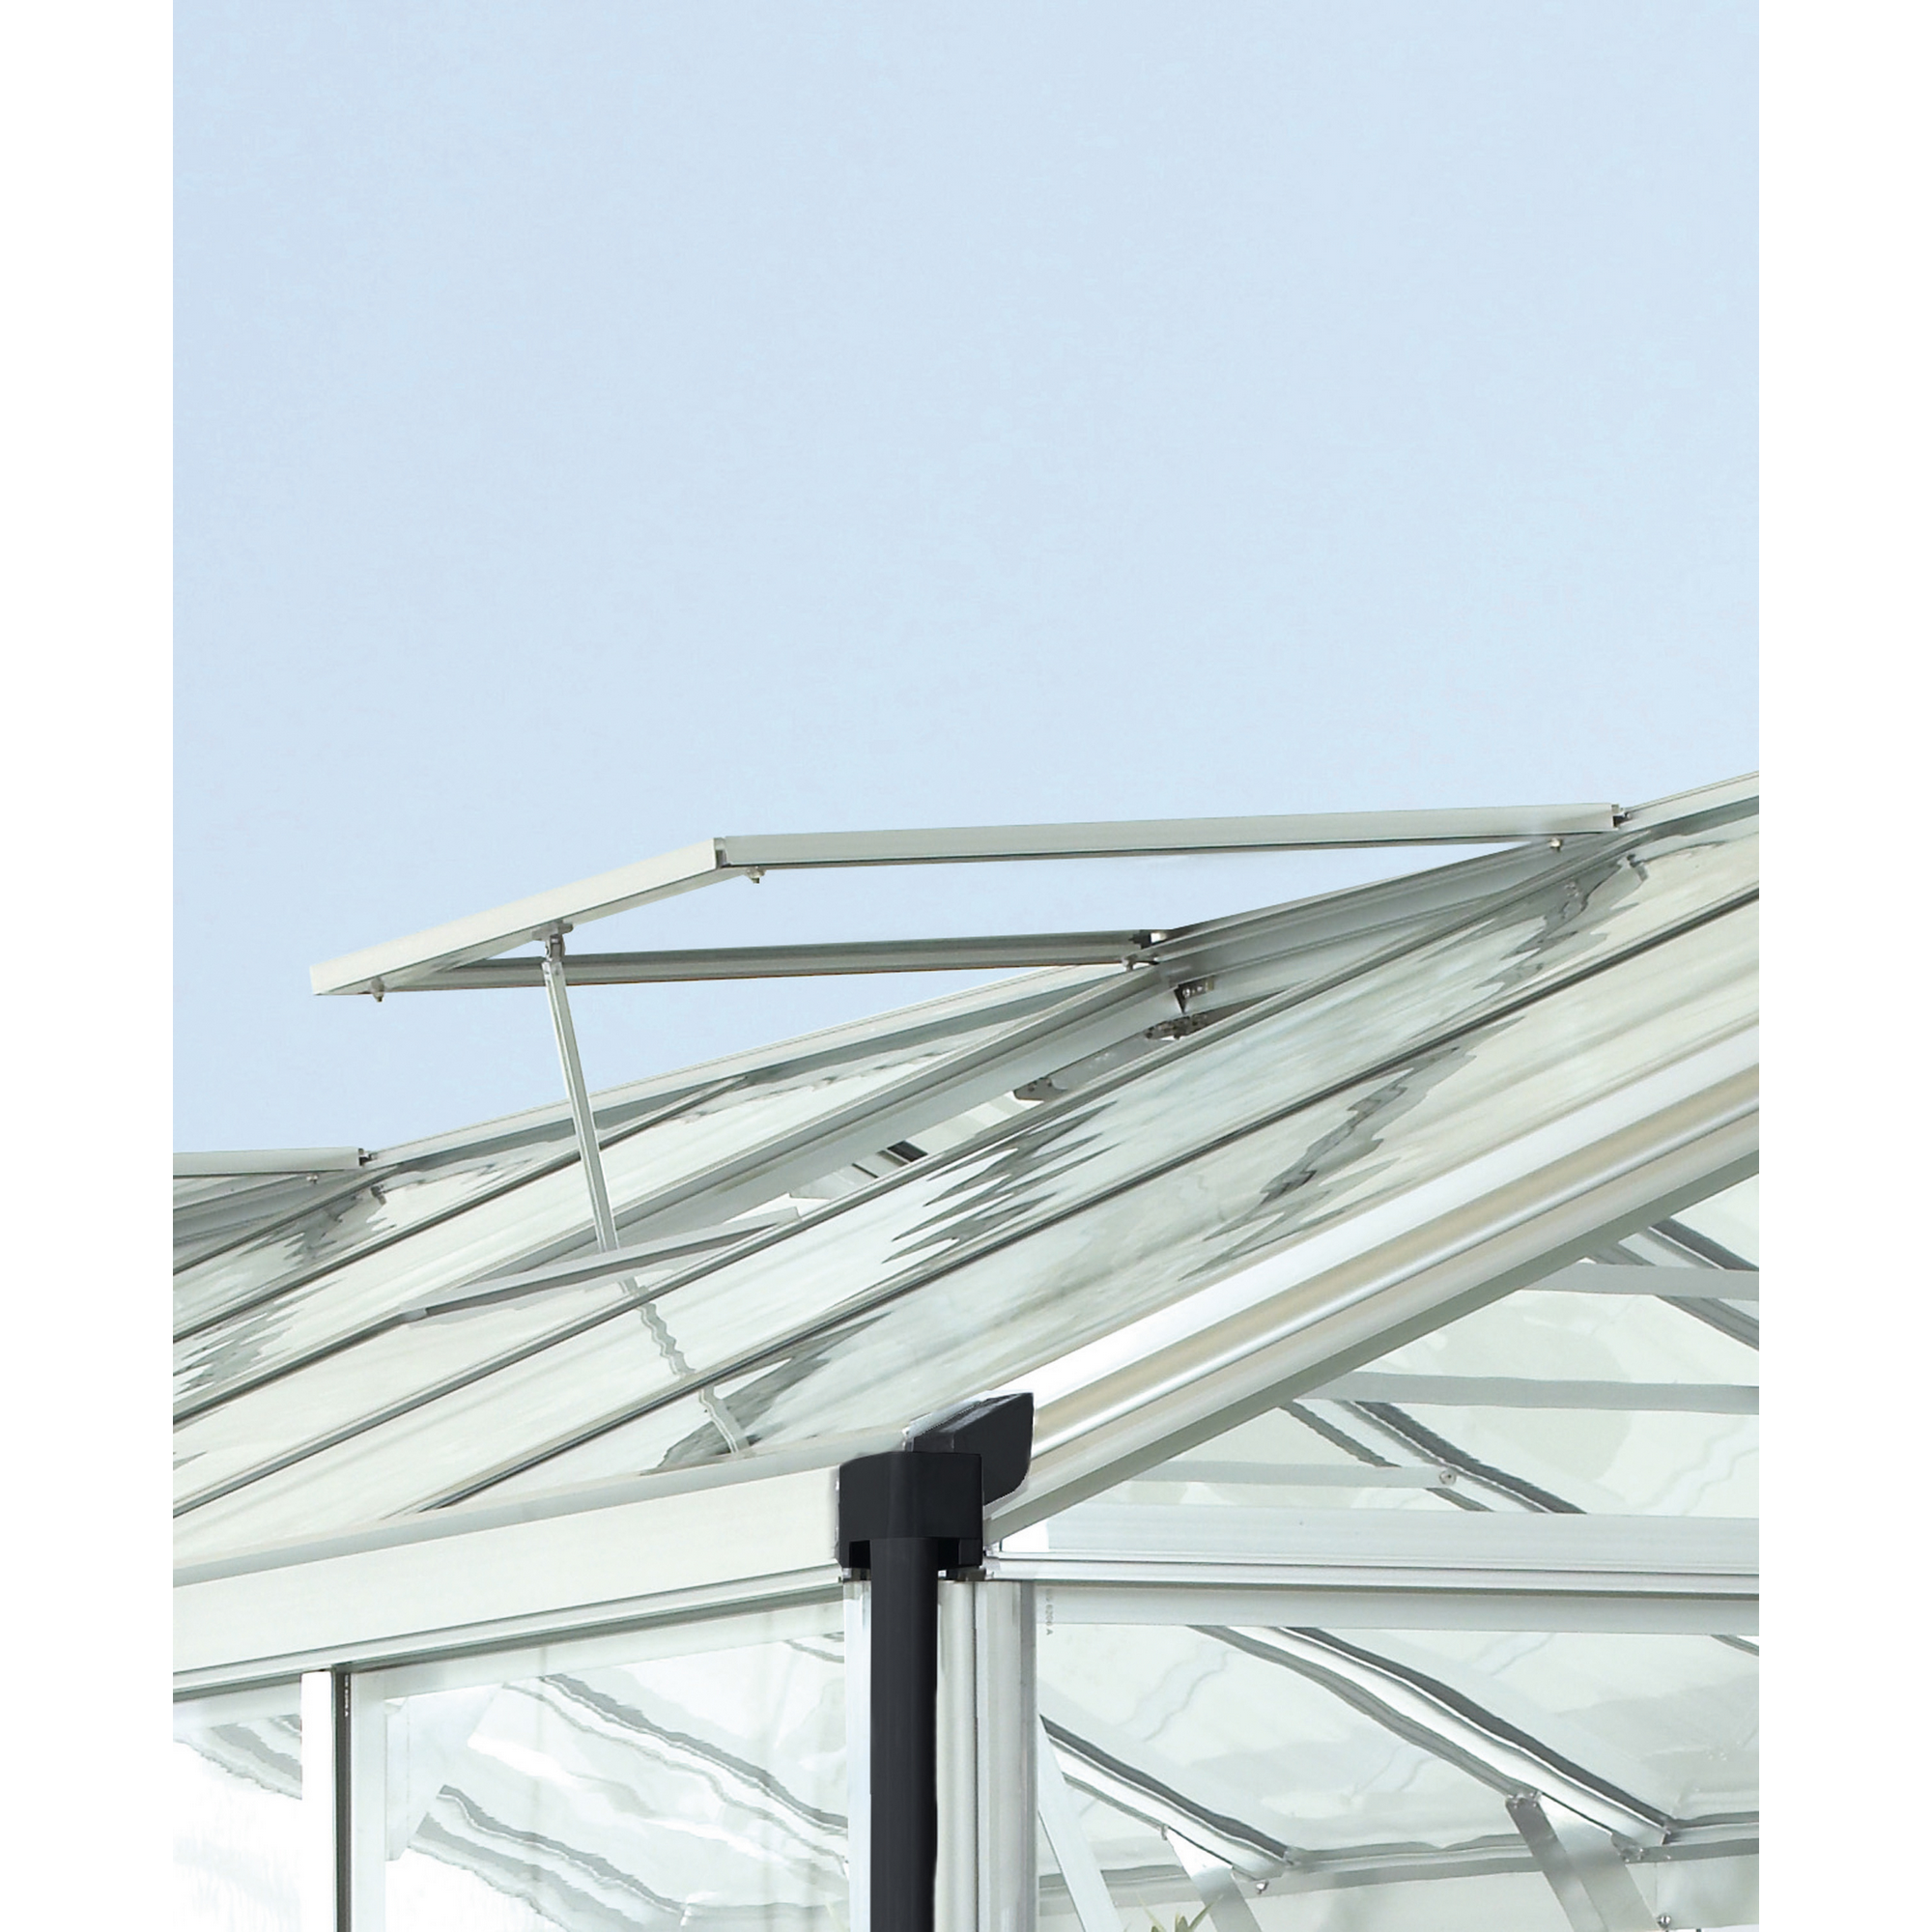 Dachfenster für Gewächshaus 'Zeus Comfort' silber 70 x 72,9 cm + product picture